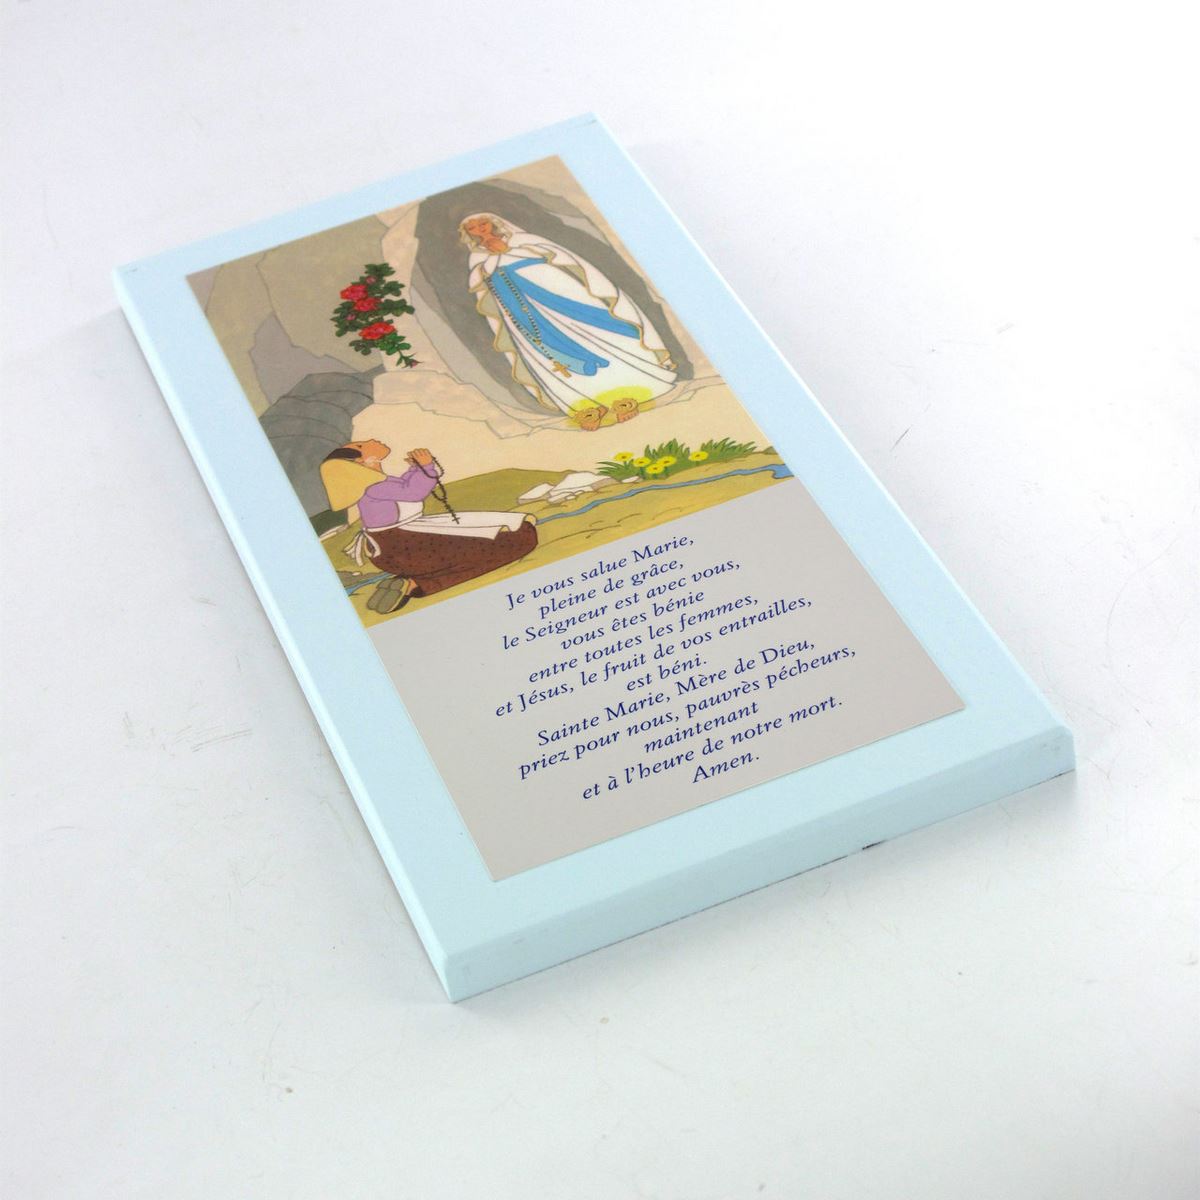 tavola lourdes con preghiera ave maria in francese su legno azzurro - 26 x 12,5 cm   